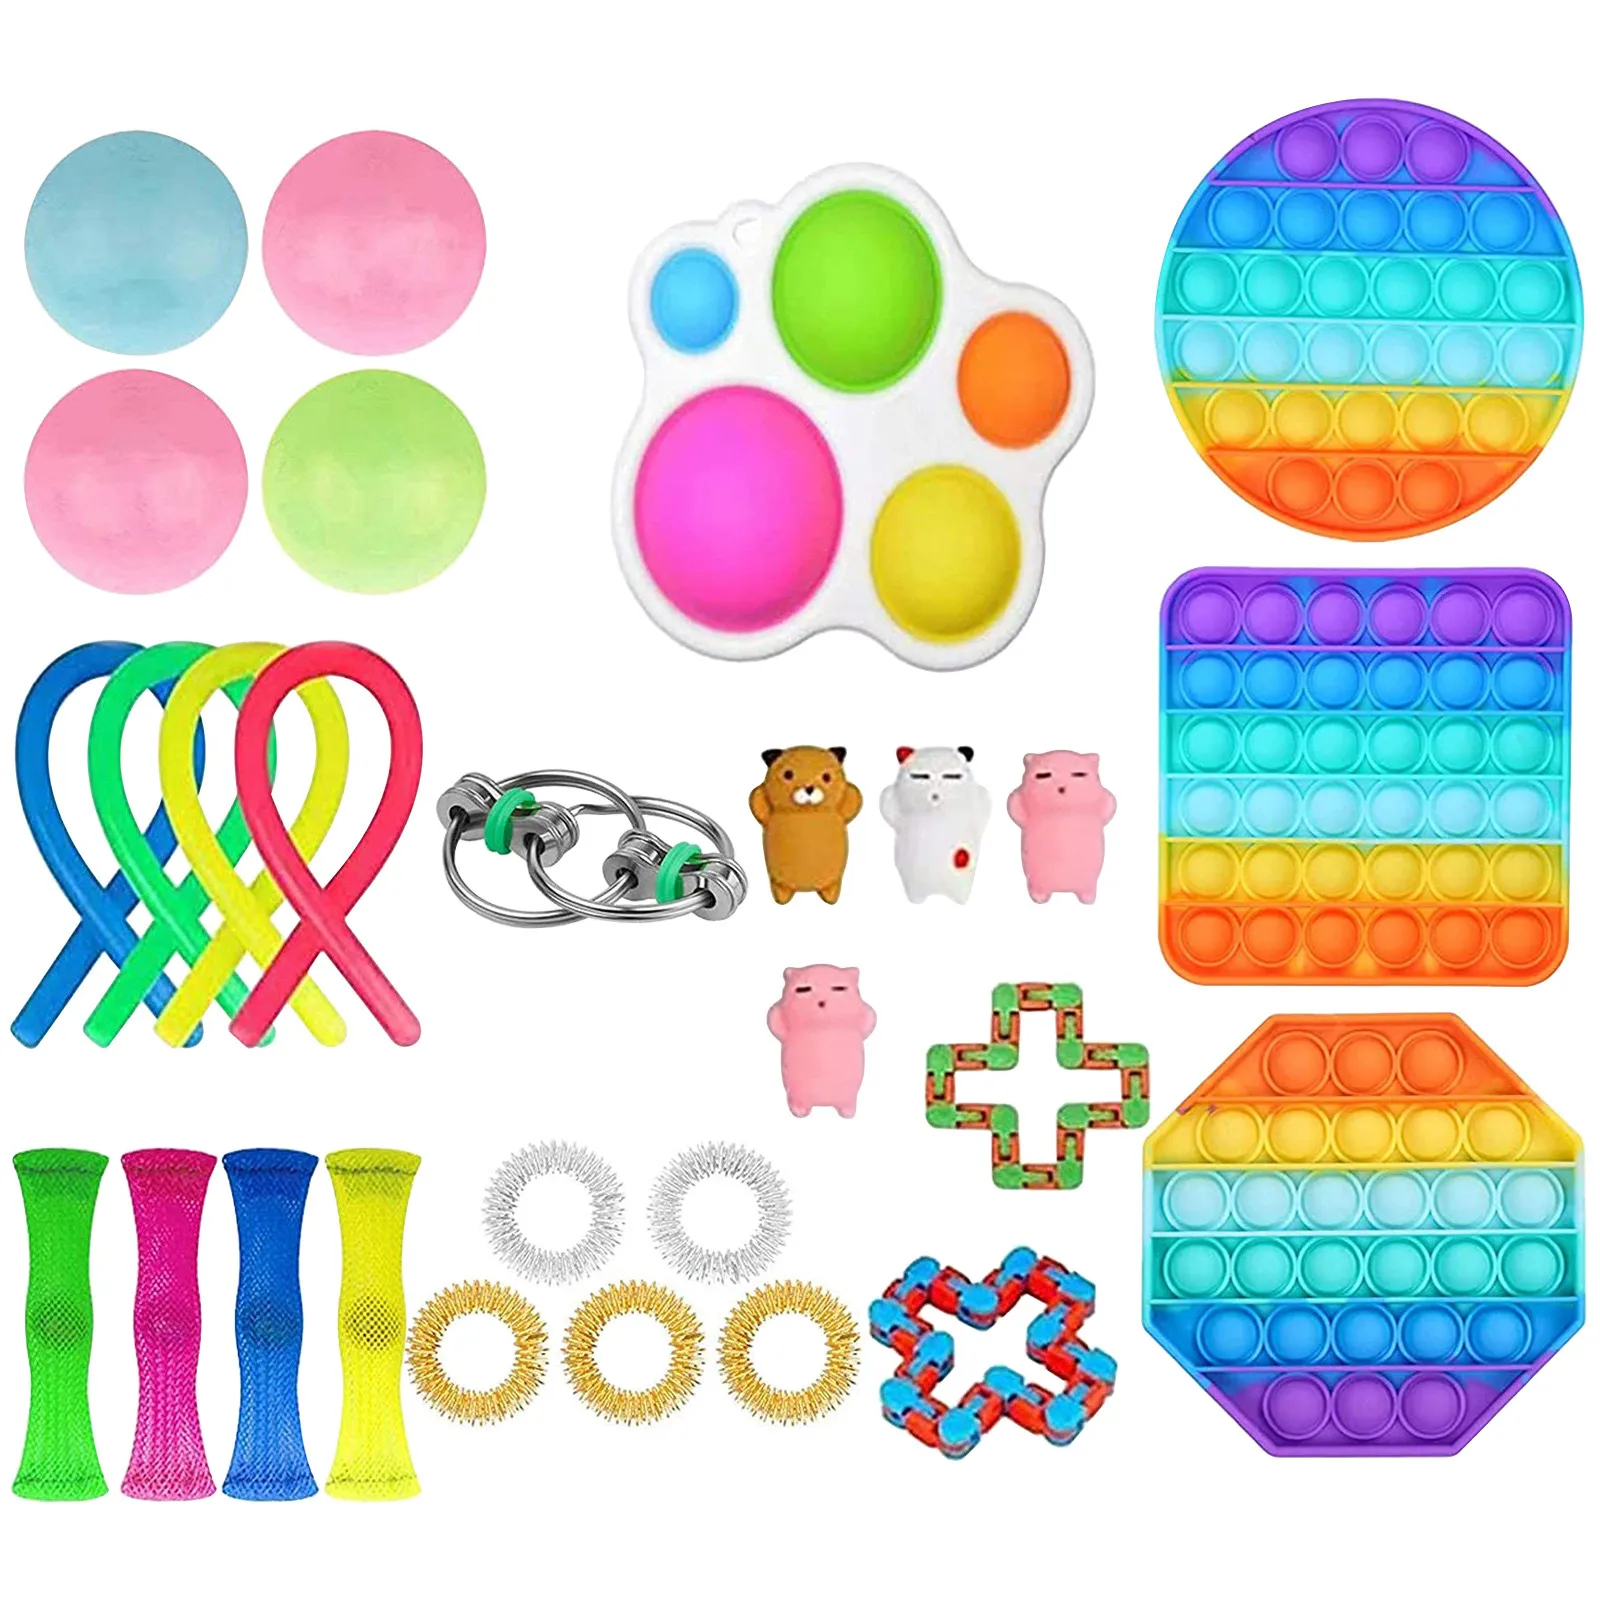 GROßE Zappeln Spielzeug Anti-Stress Push Pop Blase Sensorischen Squishy geschenk 